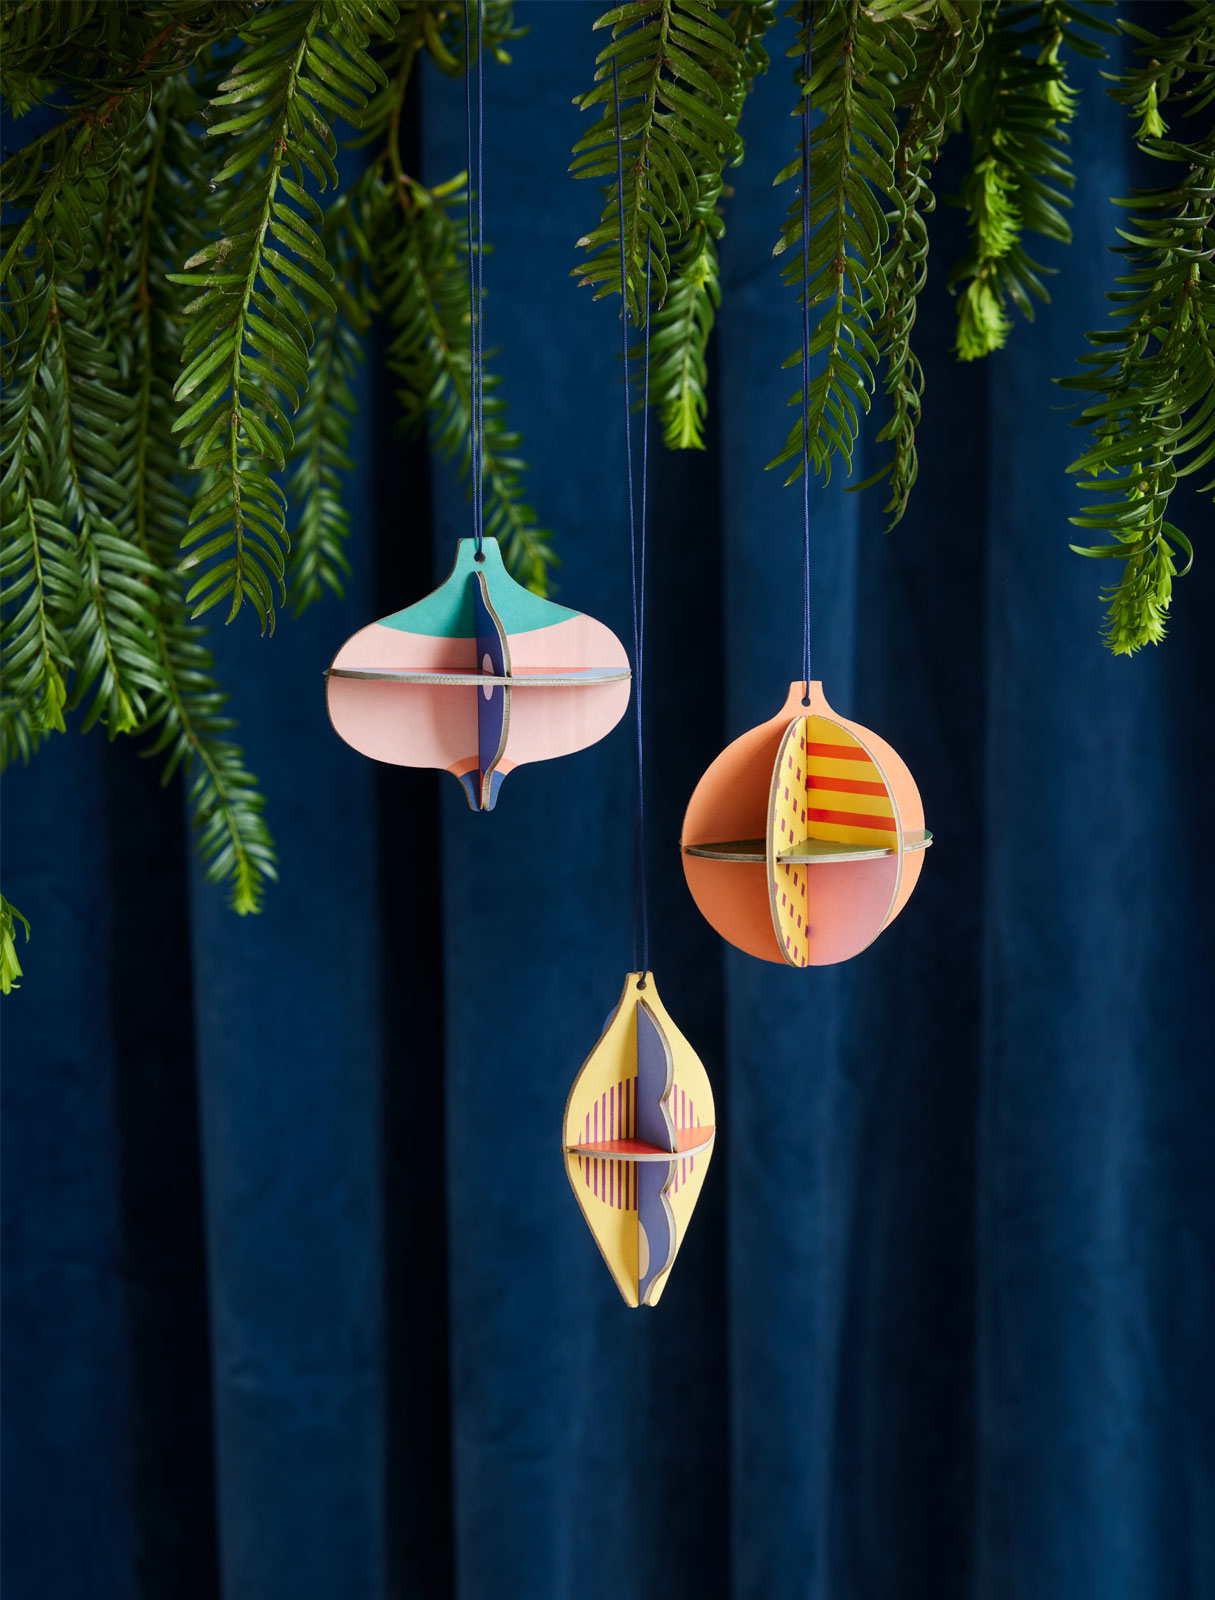 Závěsná papírová dekorace vánoční ozdoby Bonbon Assortment do vašeho domova od značky Studio ROOF